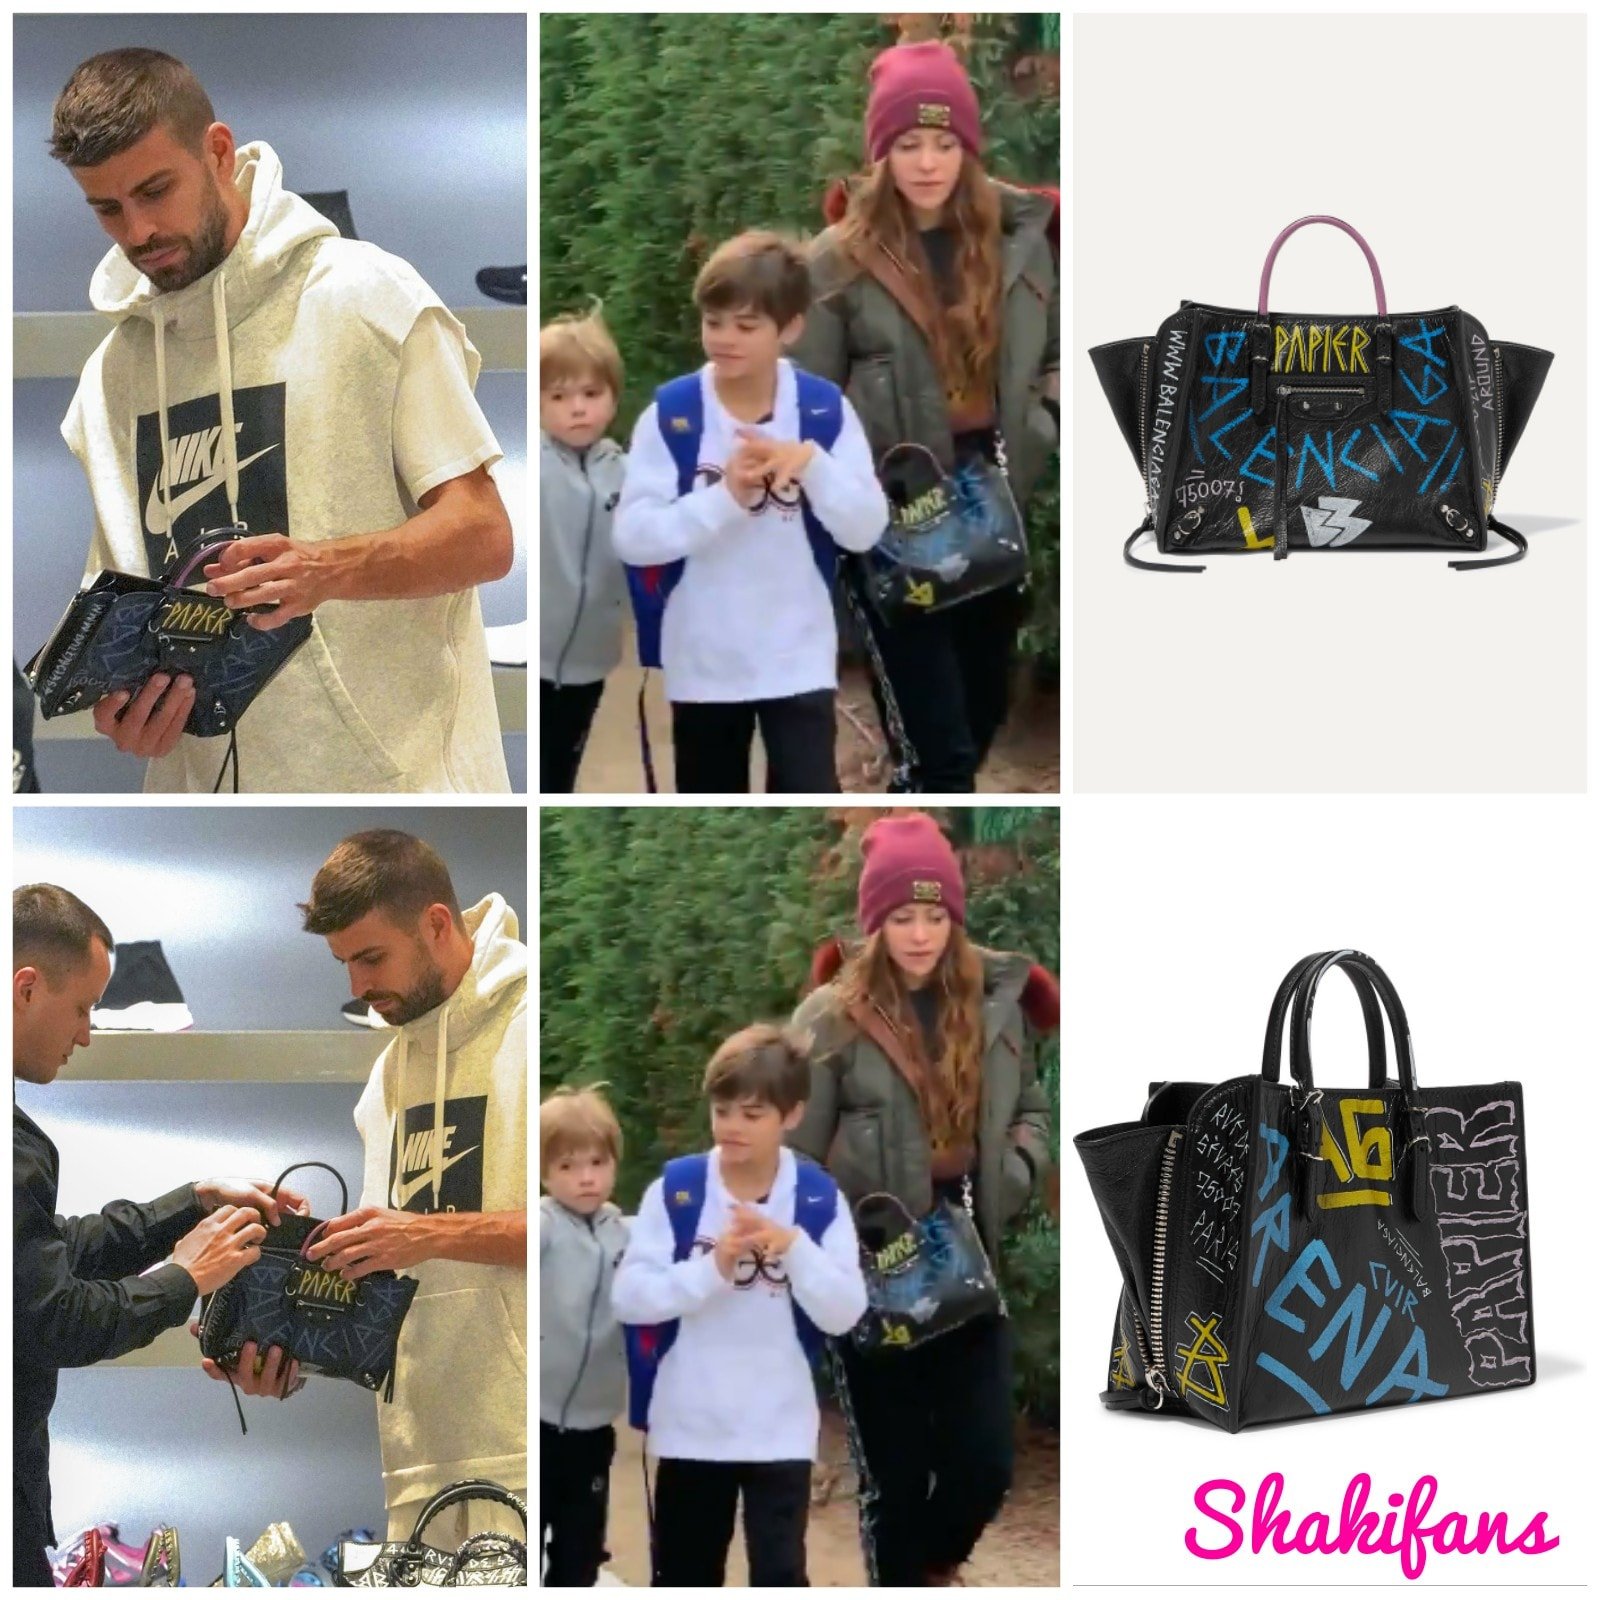 Gerard Piqué comprando el bolso a Shakira Facebook